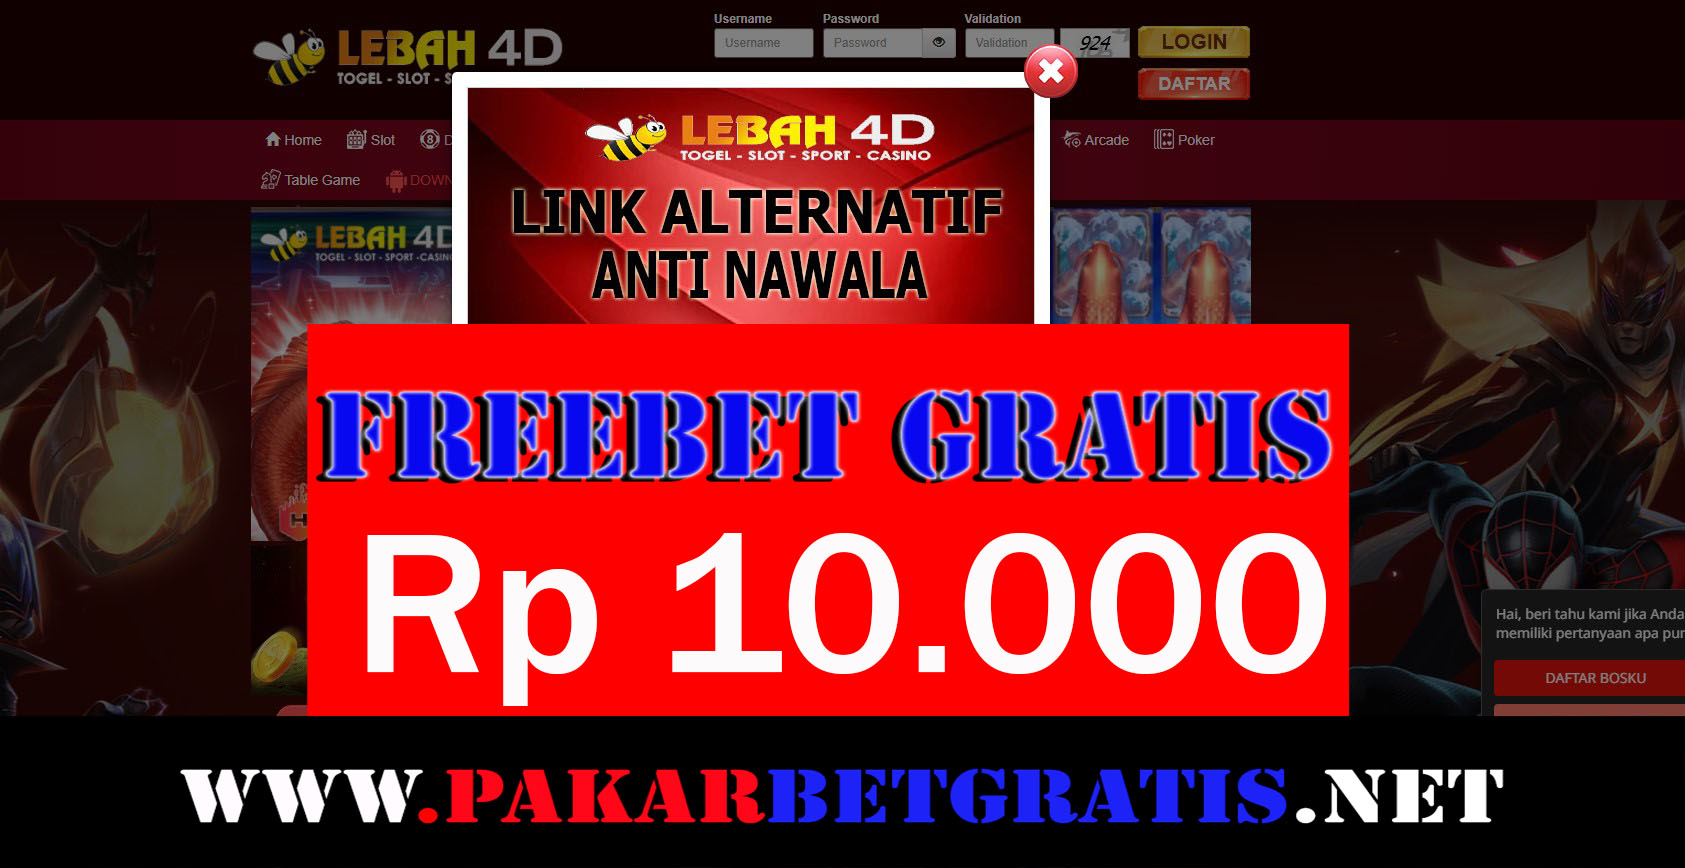 lebah4d Freebet Gratis Rp 10.000 Tanpa Deposit